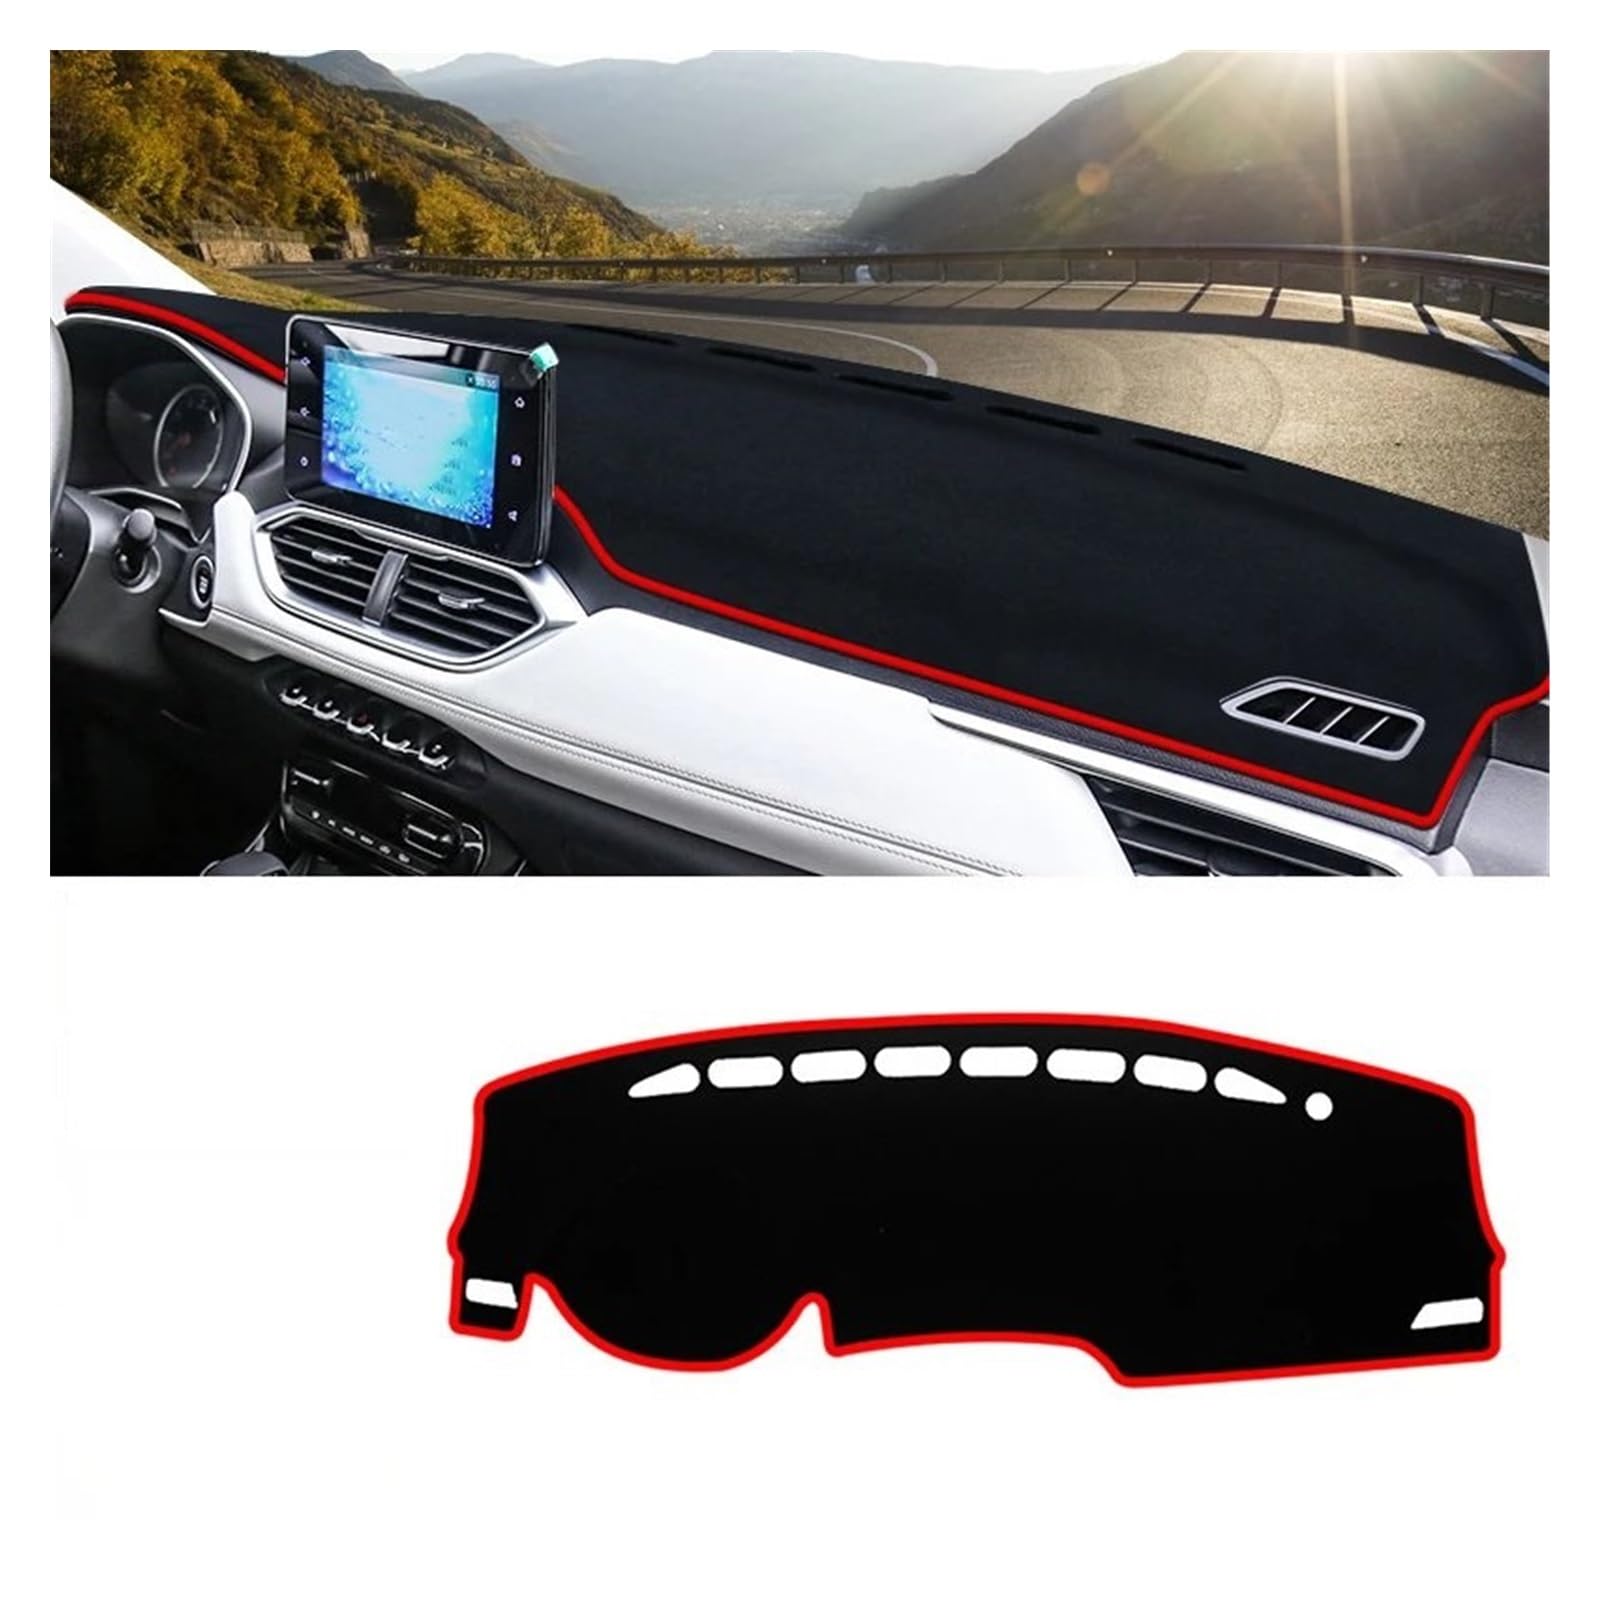 Auto Dashboard Abdeckung Matte Für Chevrolet Für Captiva 2019 2020 2021 2022 2023 Auto Dashboard Abdeckung Dash Matte Sonnenschutz Nicht-slip Pad(A Red Side) von SIMBAE